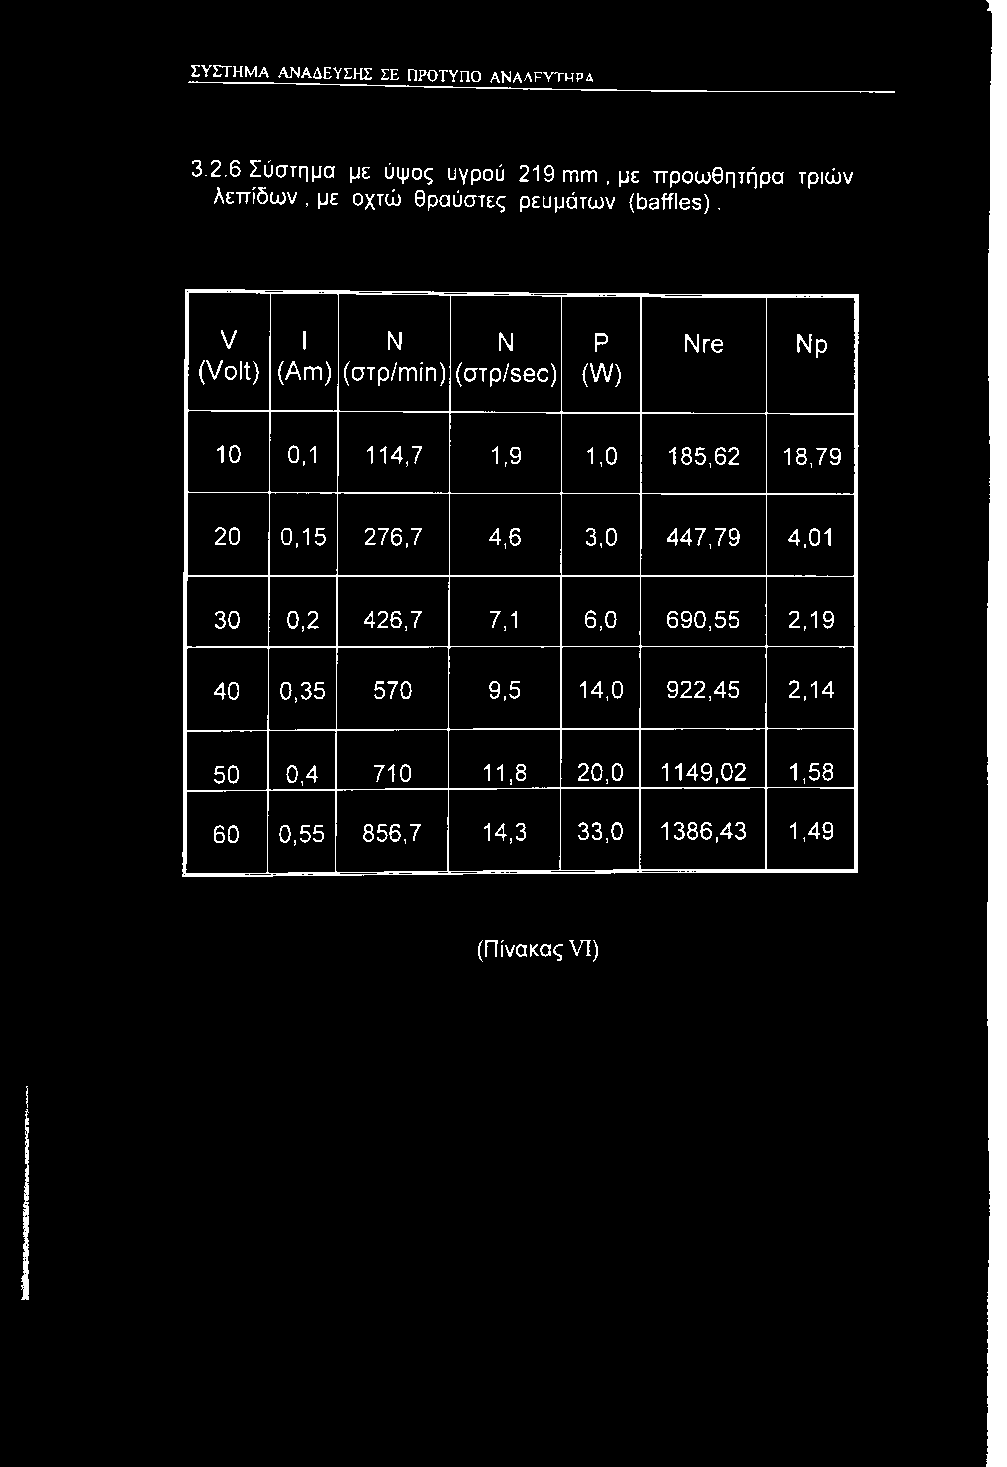 V (Volt) 1 Ν Ν (Am) (στρ/min) (otp/sec) Ρ (W) Nre Νρ 10 0,1 114,7 1,9 1,0 185,62 18,79 20 0,15 276,7